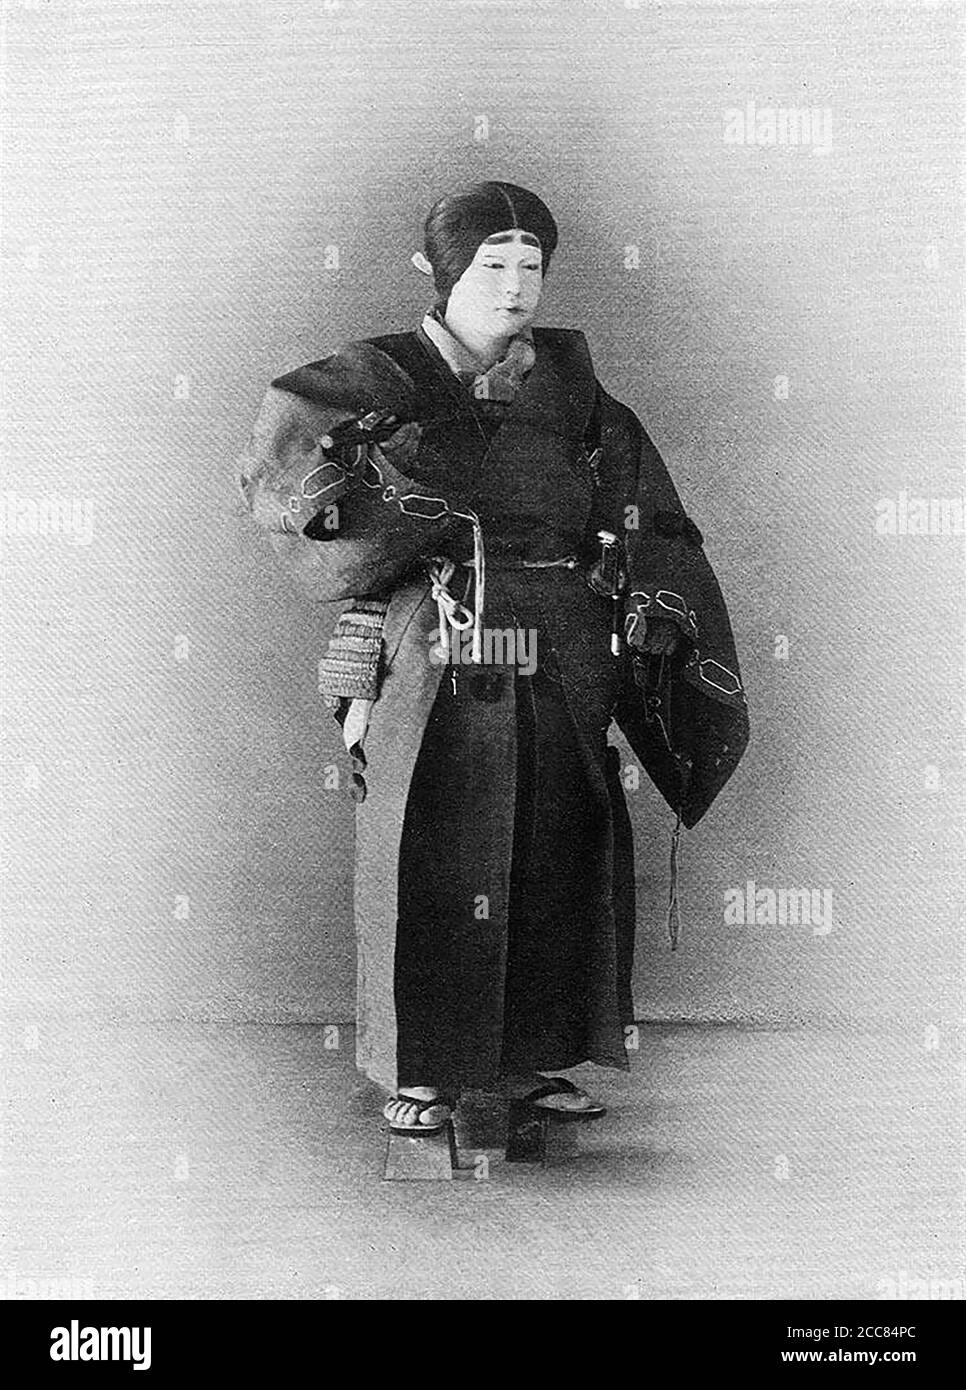 Japan: 'Ein junger Edler'. Chemigraph aus der Serie 'Military Costumes in Old Japan' von Kazumasa Ogawa (1860-1929), 1893, Tokio. Ogawa Kazumasa, auch bekannt als Ogawa Kazuma oder Ogawa Isshin, war ein japanischer Fotograf, Chemigraph, Drucker und Verleger der Meiji-Ära. Er war ein Pionier im photomechanischen Druck und der Fotografie und wurde in den Samurai-Clan von Matsudaira geboren, wo er im Alter von 15 Jahren Englisch und Fotografie studierte. Stockfoto